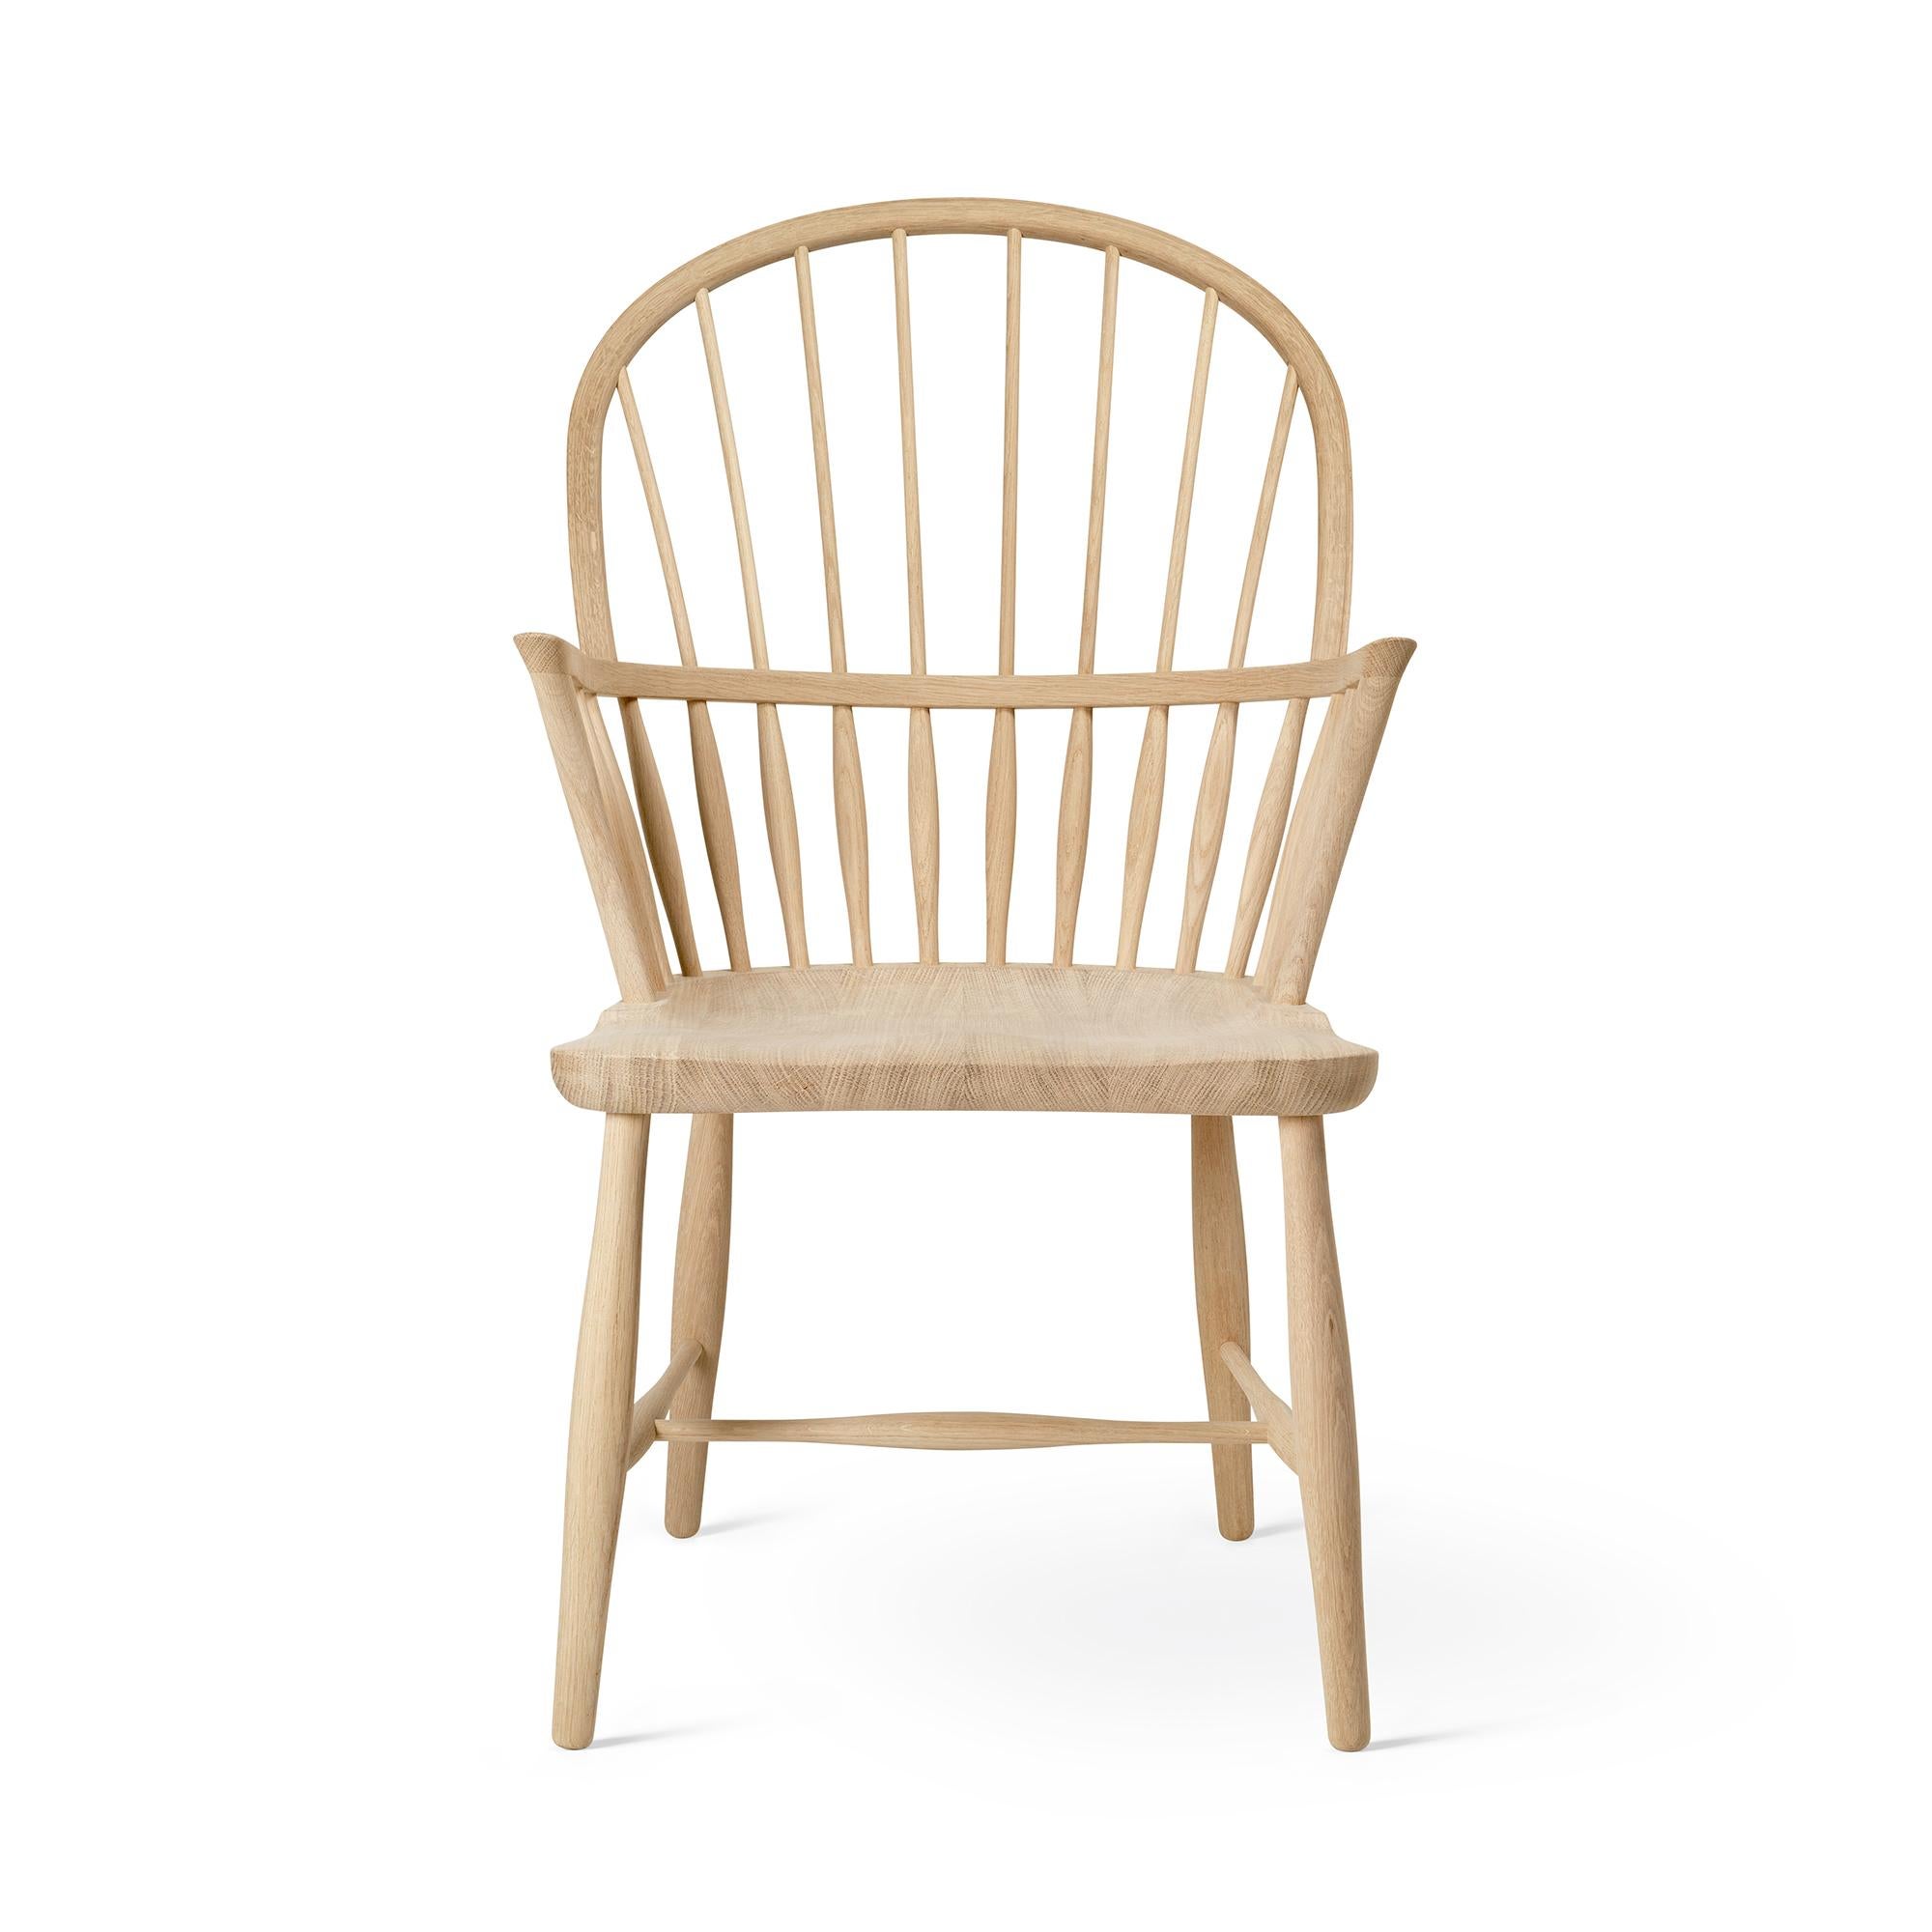 Frits Henningsen 'FH38 Windsor' Chair in Oiled Oak for Carl Hansen & Son For Sale 6